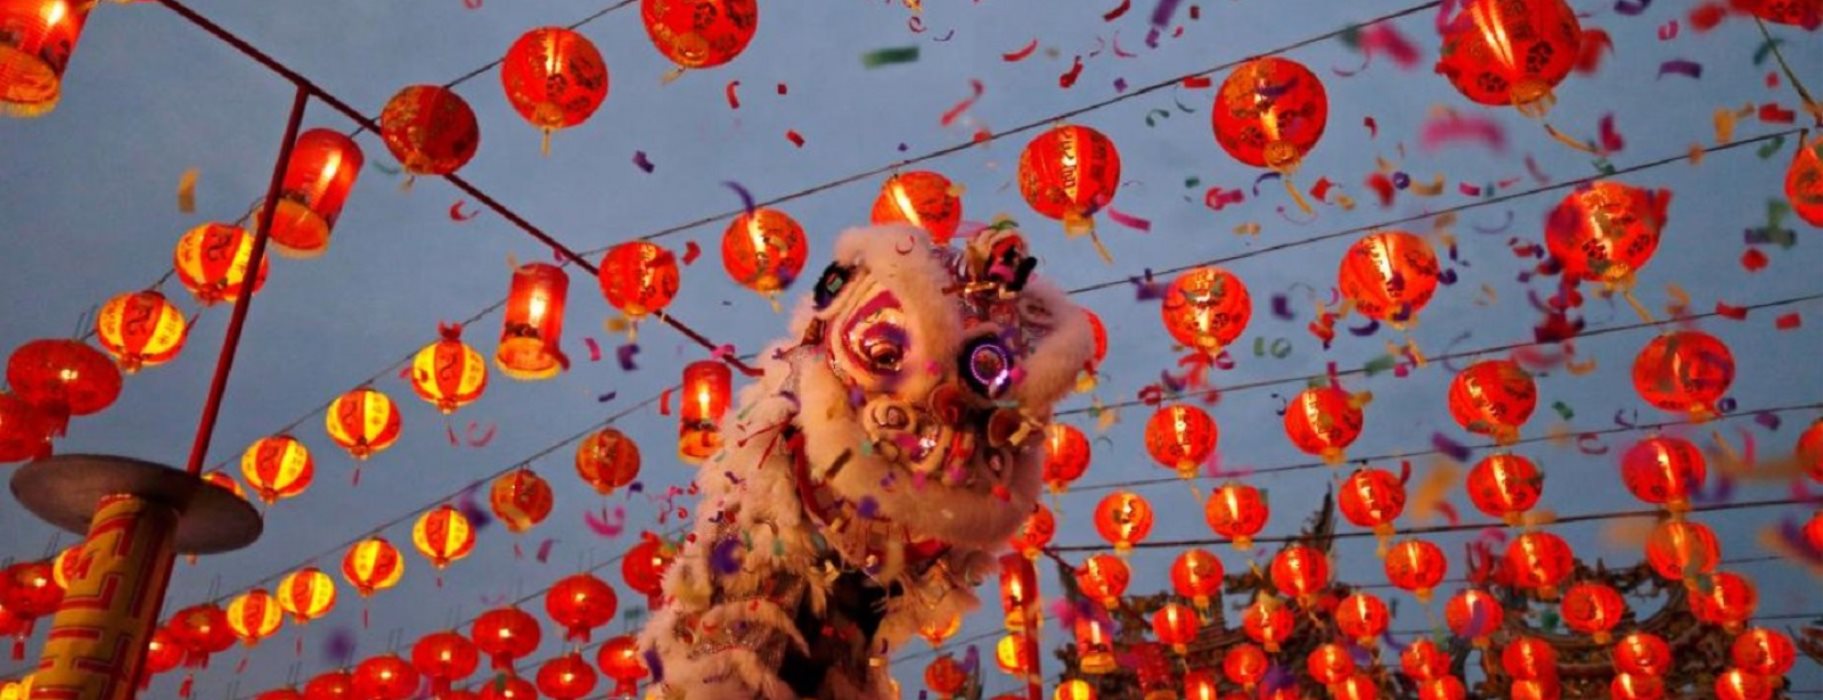 Κοροναϊός: Ακύρωση των εορτασμών της κινεζικής Πρωτοχρονιάς στην Ελλάδα